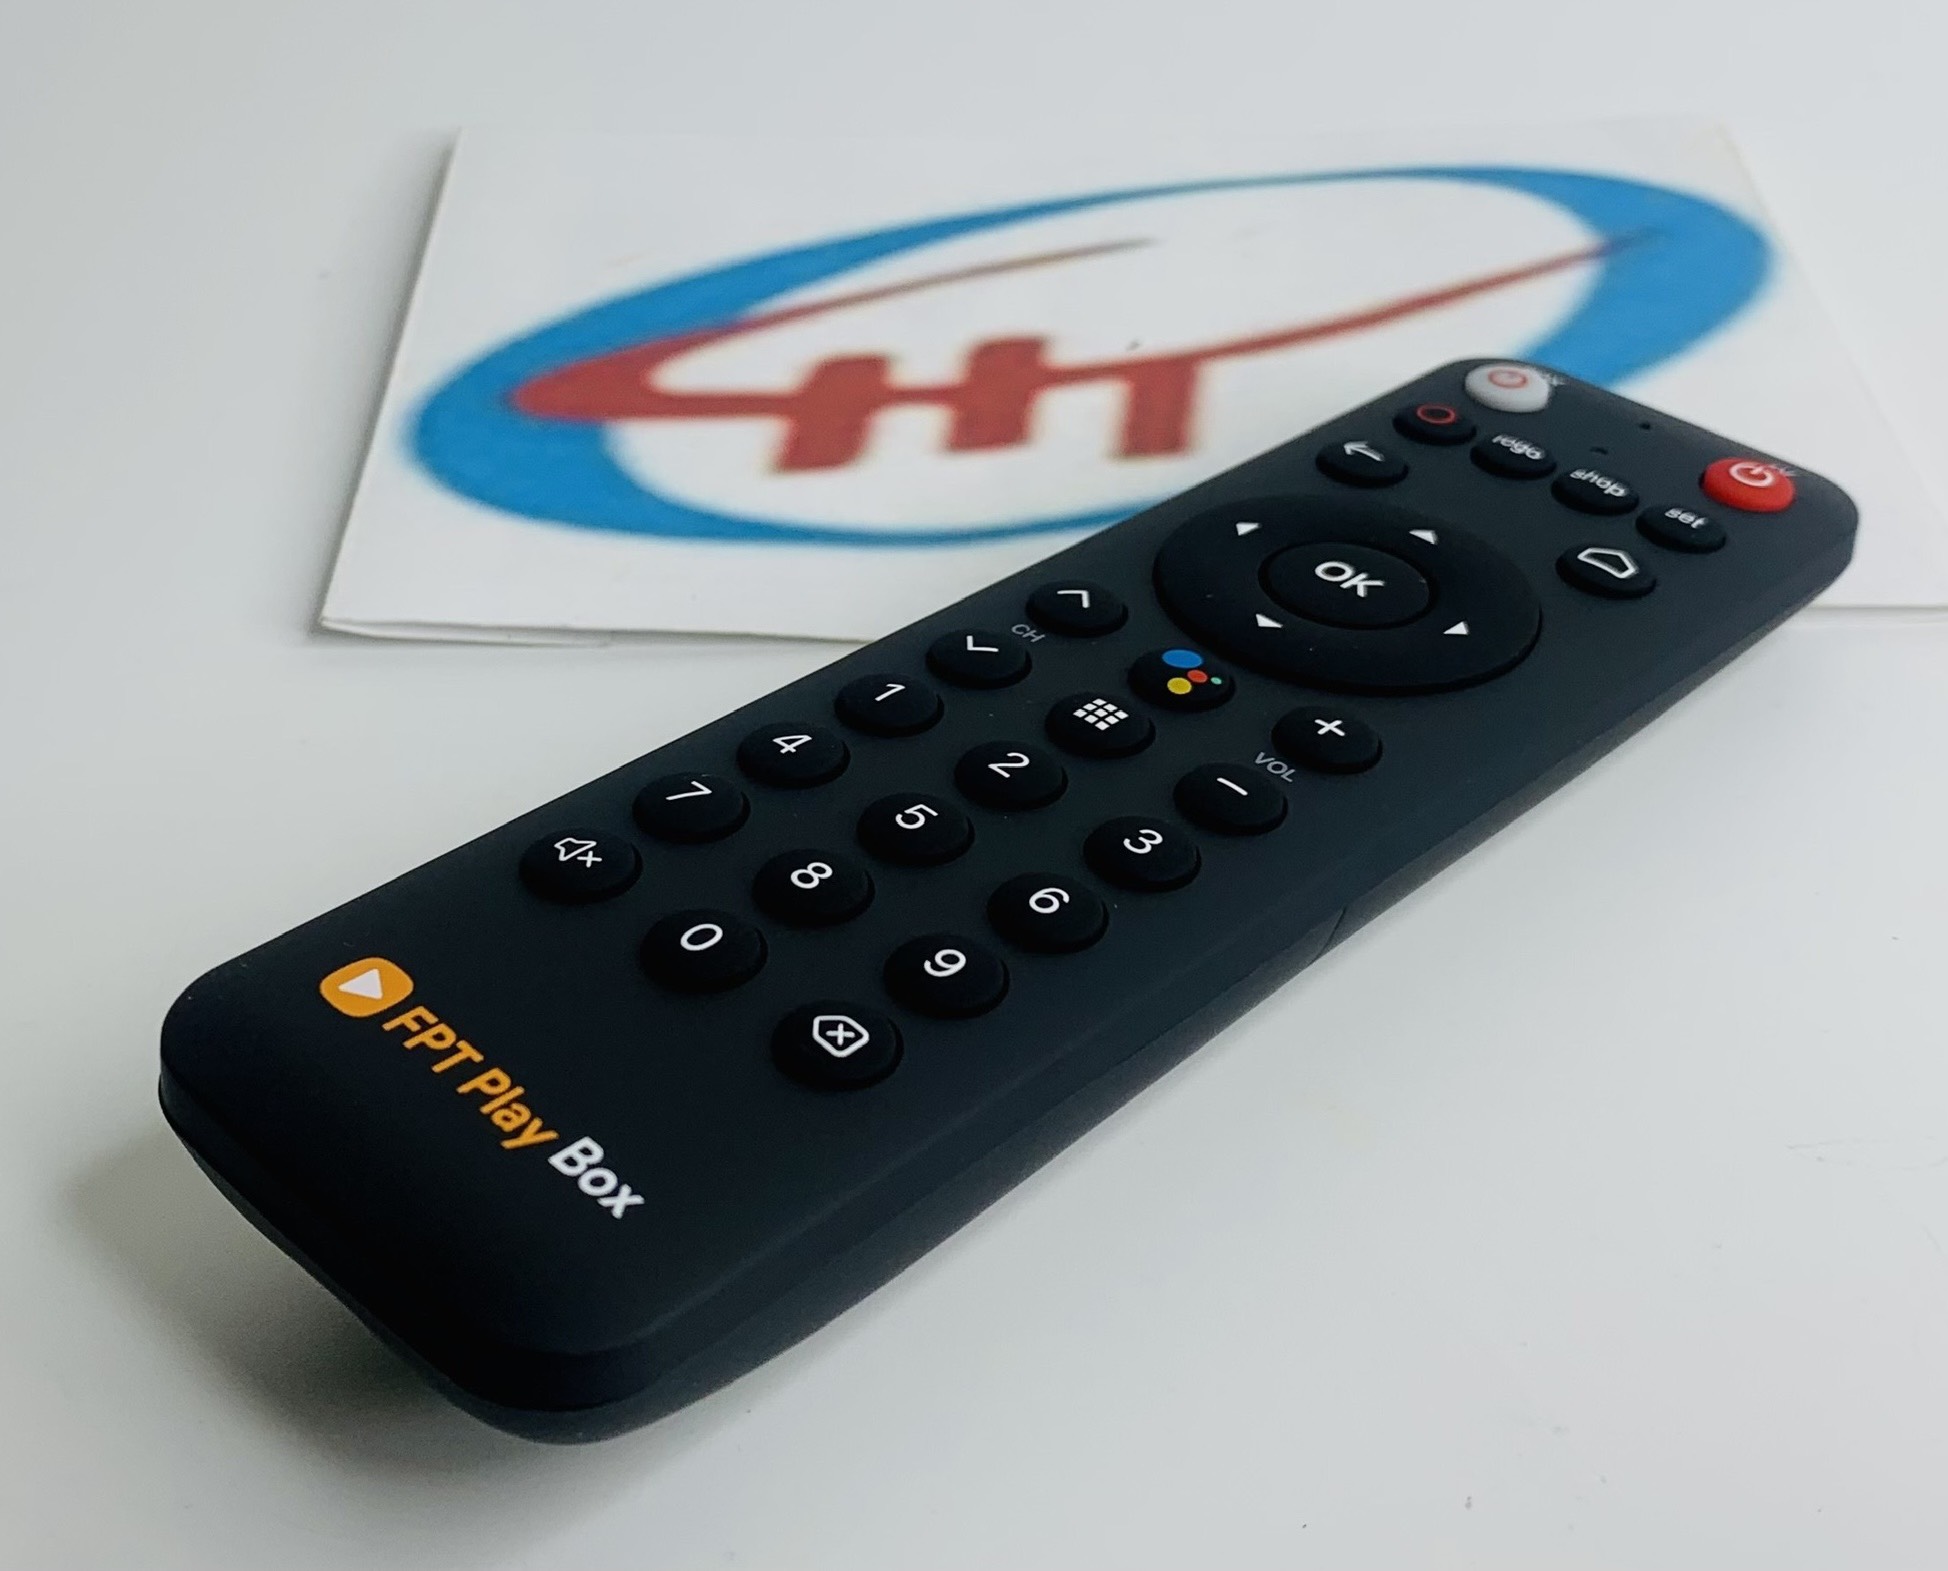 FPT Play Box S 2021 – Chính hãng FPT Telecom (Mã T590) – Kết hợp Tivi Box và Loa thông minh